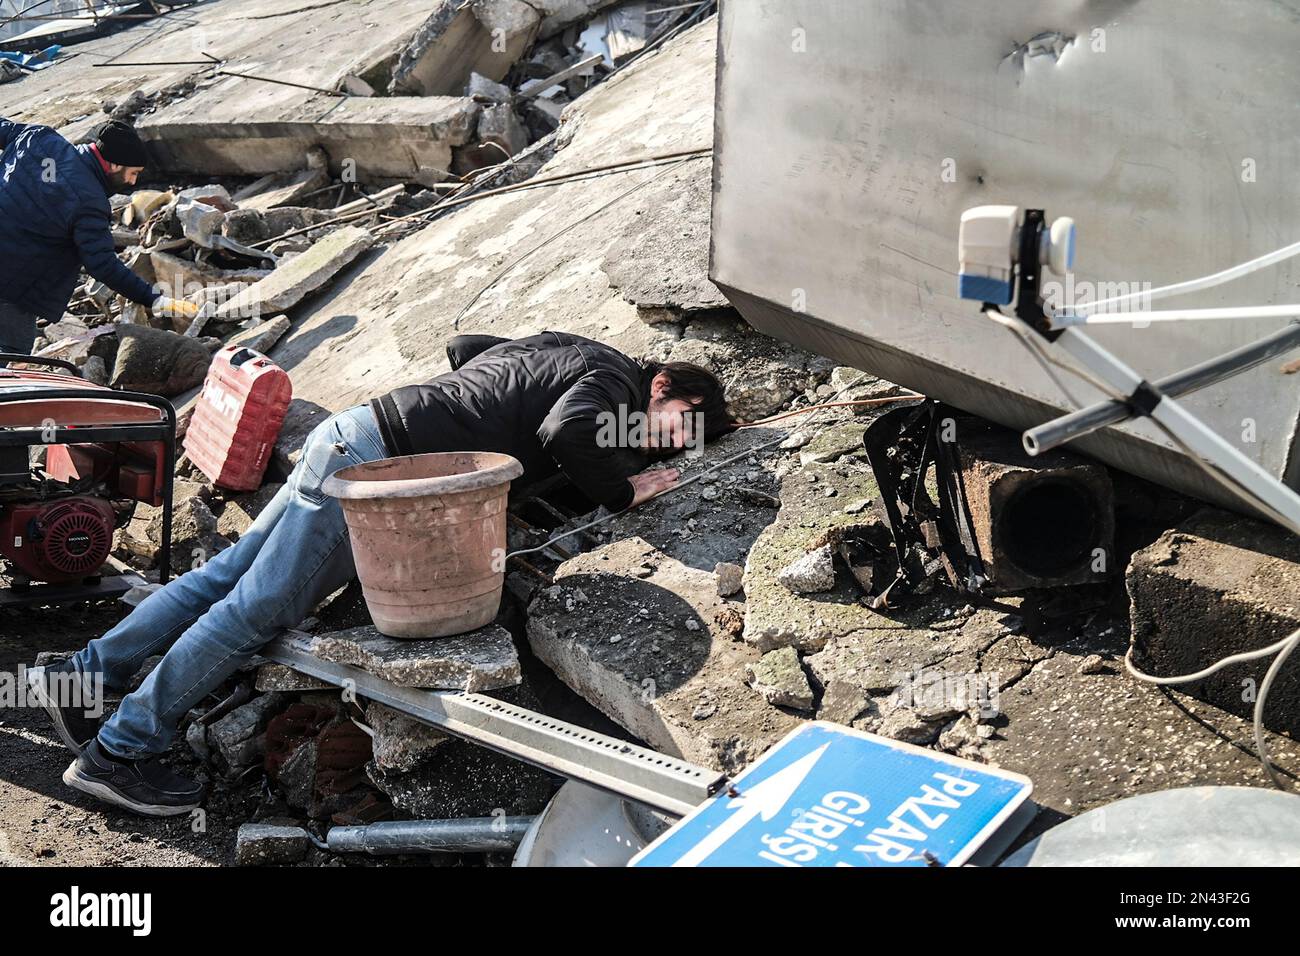 Hatay, Antakya, Türkei. 1. Januar 2020. Ein Mann legt sein Ohr in die Trümmer, für den Fall, dass jemand gefangen ist. Die Menschen bitten um mehr Hilfe im Antakya-Viertel Hatay, einer der Städte, in denen die größten Trümmer erlebten. Die Türkei erlebte das größte Erdbeben dieses Jahrhunderts in der Grenzregion zu Syrien. Das Erdbeben wurde bei 7,7 gemessen. (Kreditbild: © Murat Kocabas/SOPA Images via ZUMA Press Wire) NUR REDAKTIONELLE VERWENDUNG! Nicht für den kommerziellen GEBRAUCH! Stockfoto